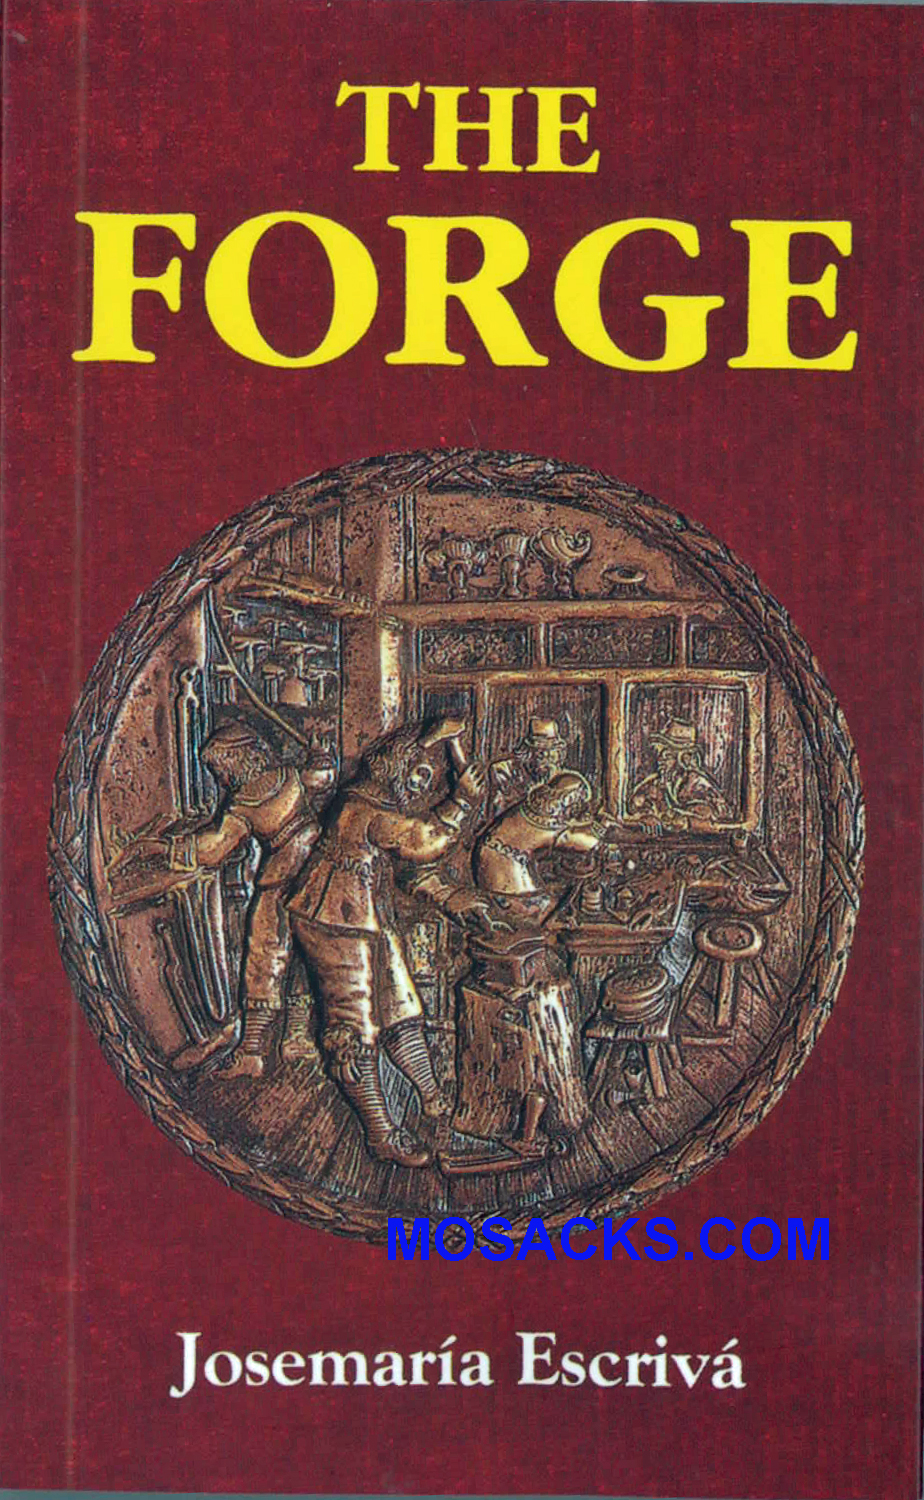 The Forge by Josemaria Escriva 445-40325